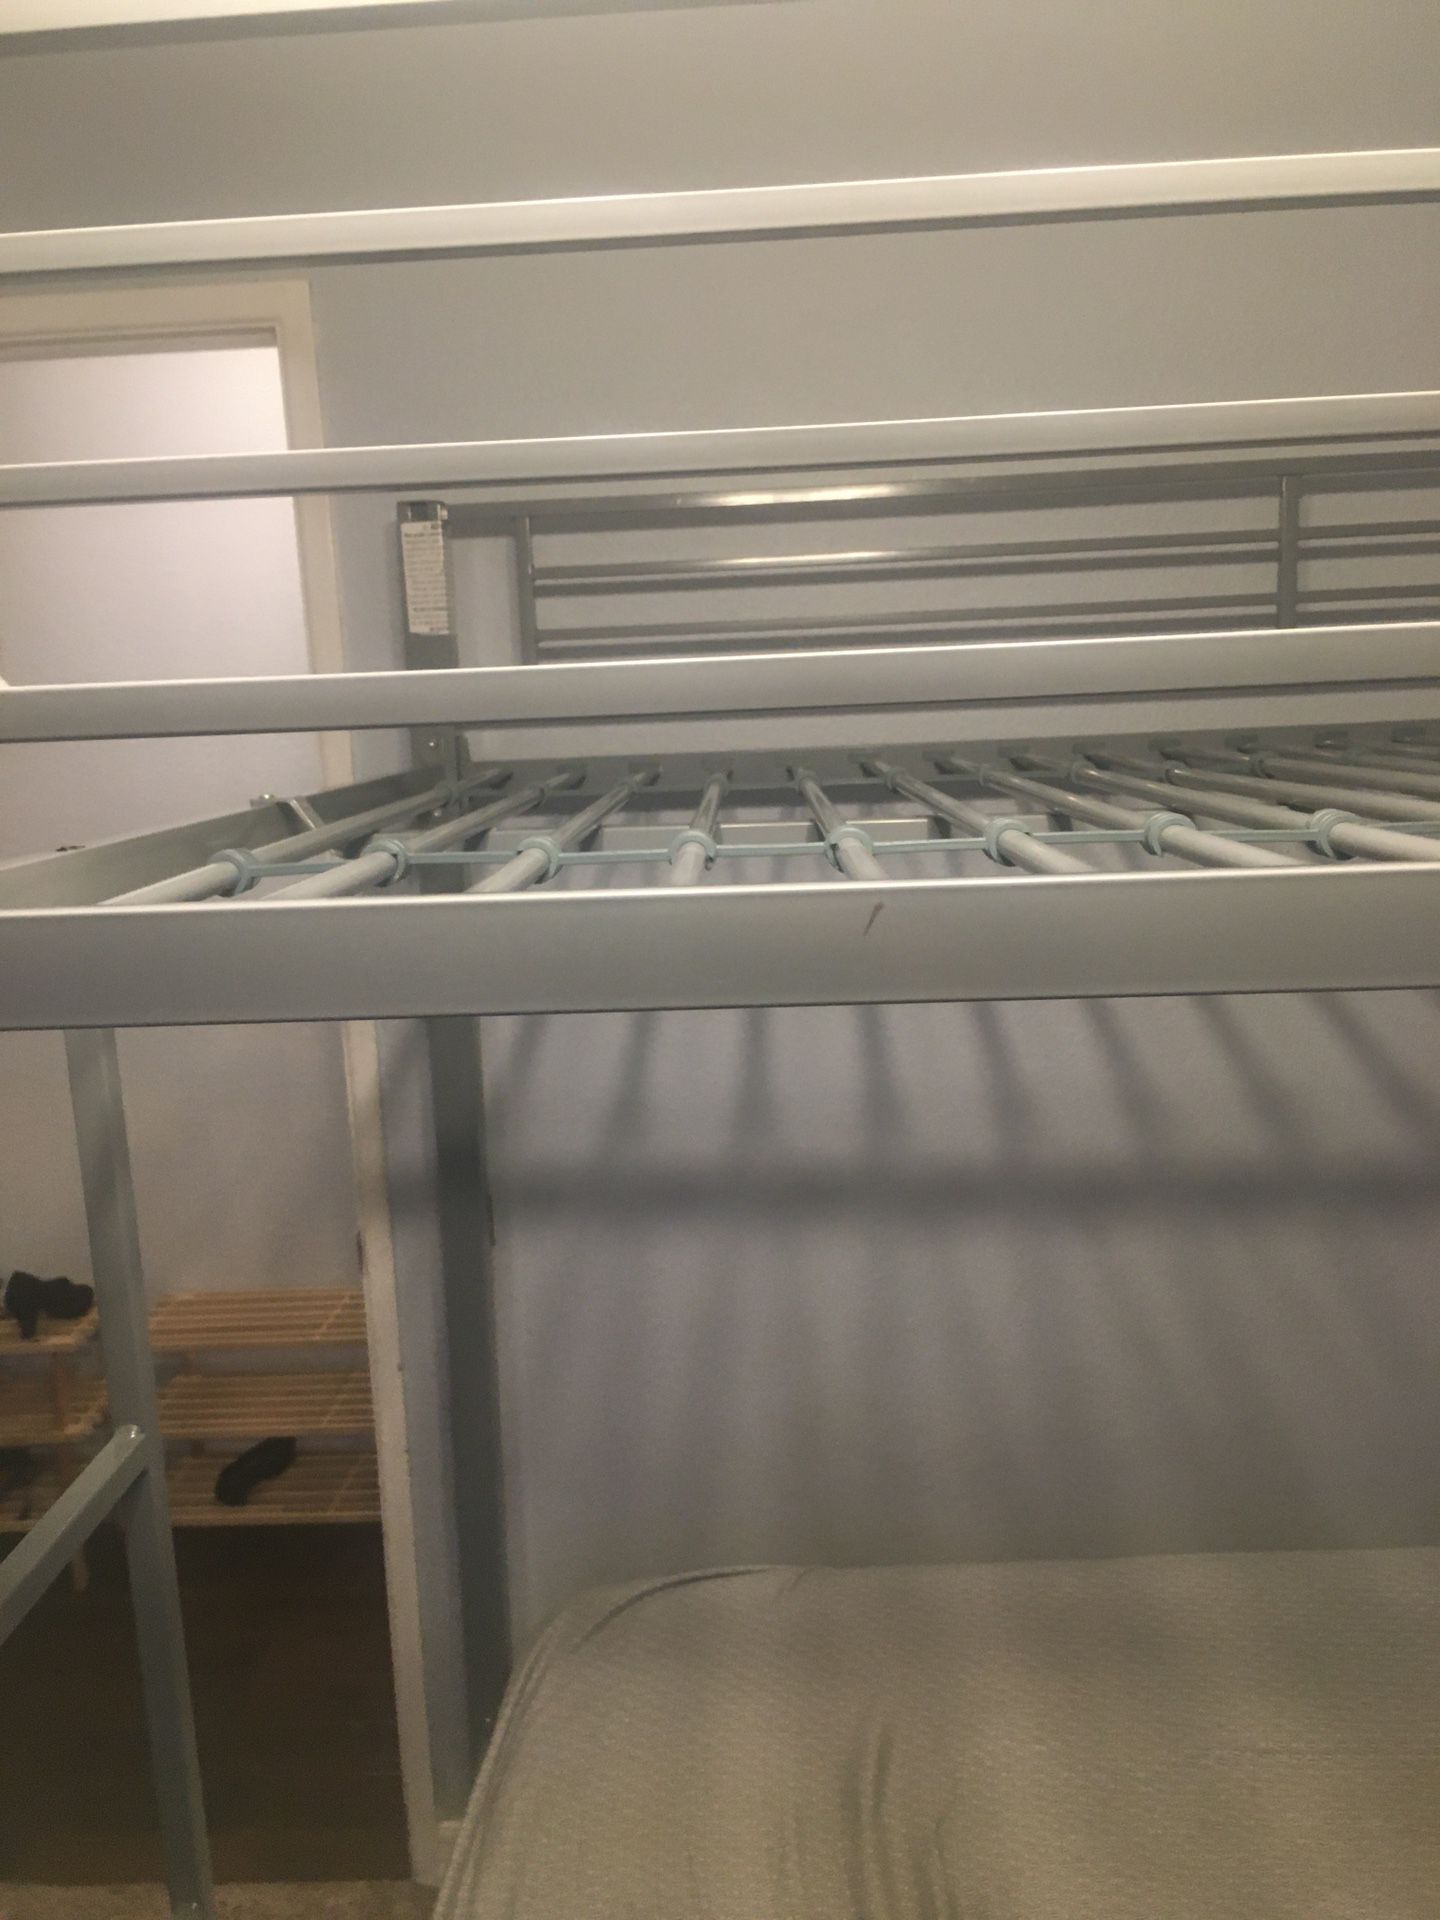 Bunk bed frame